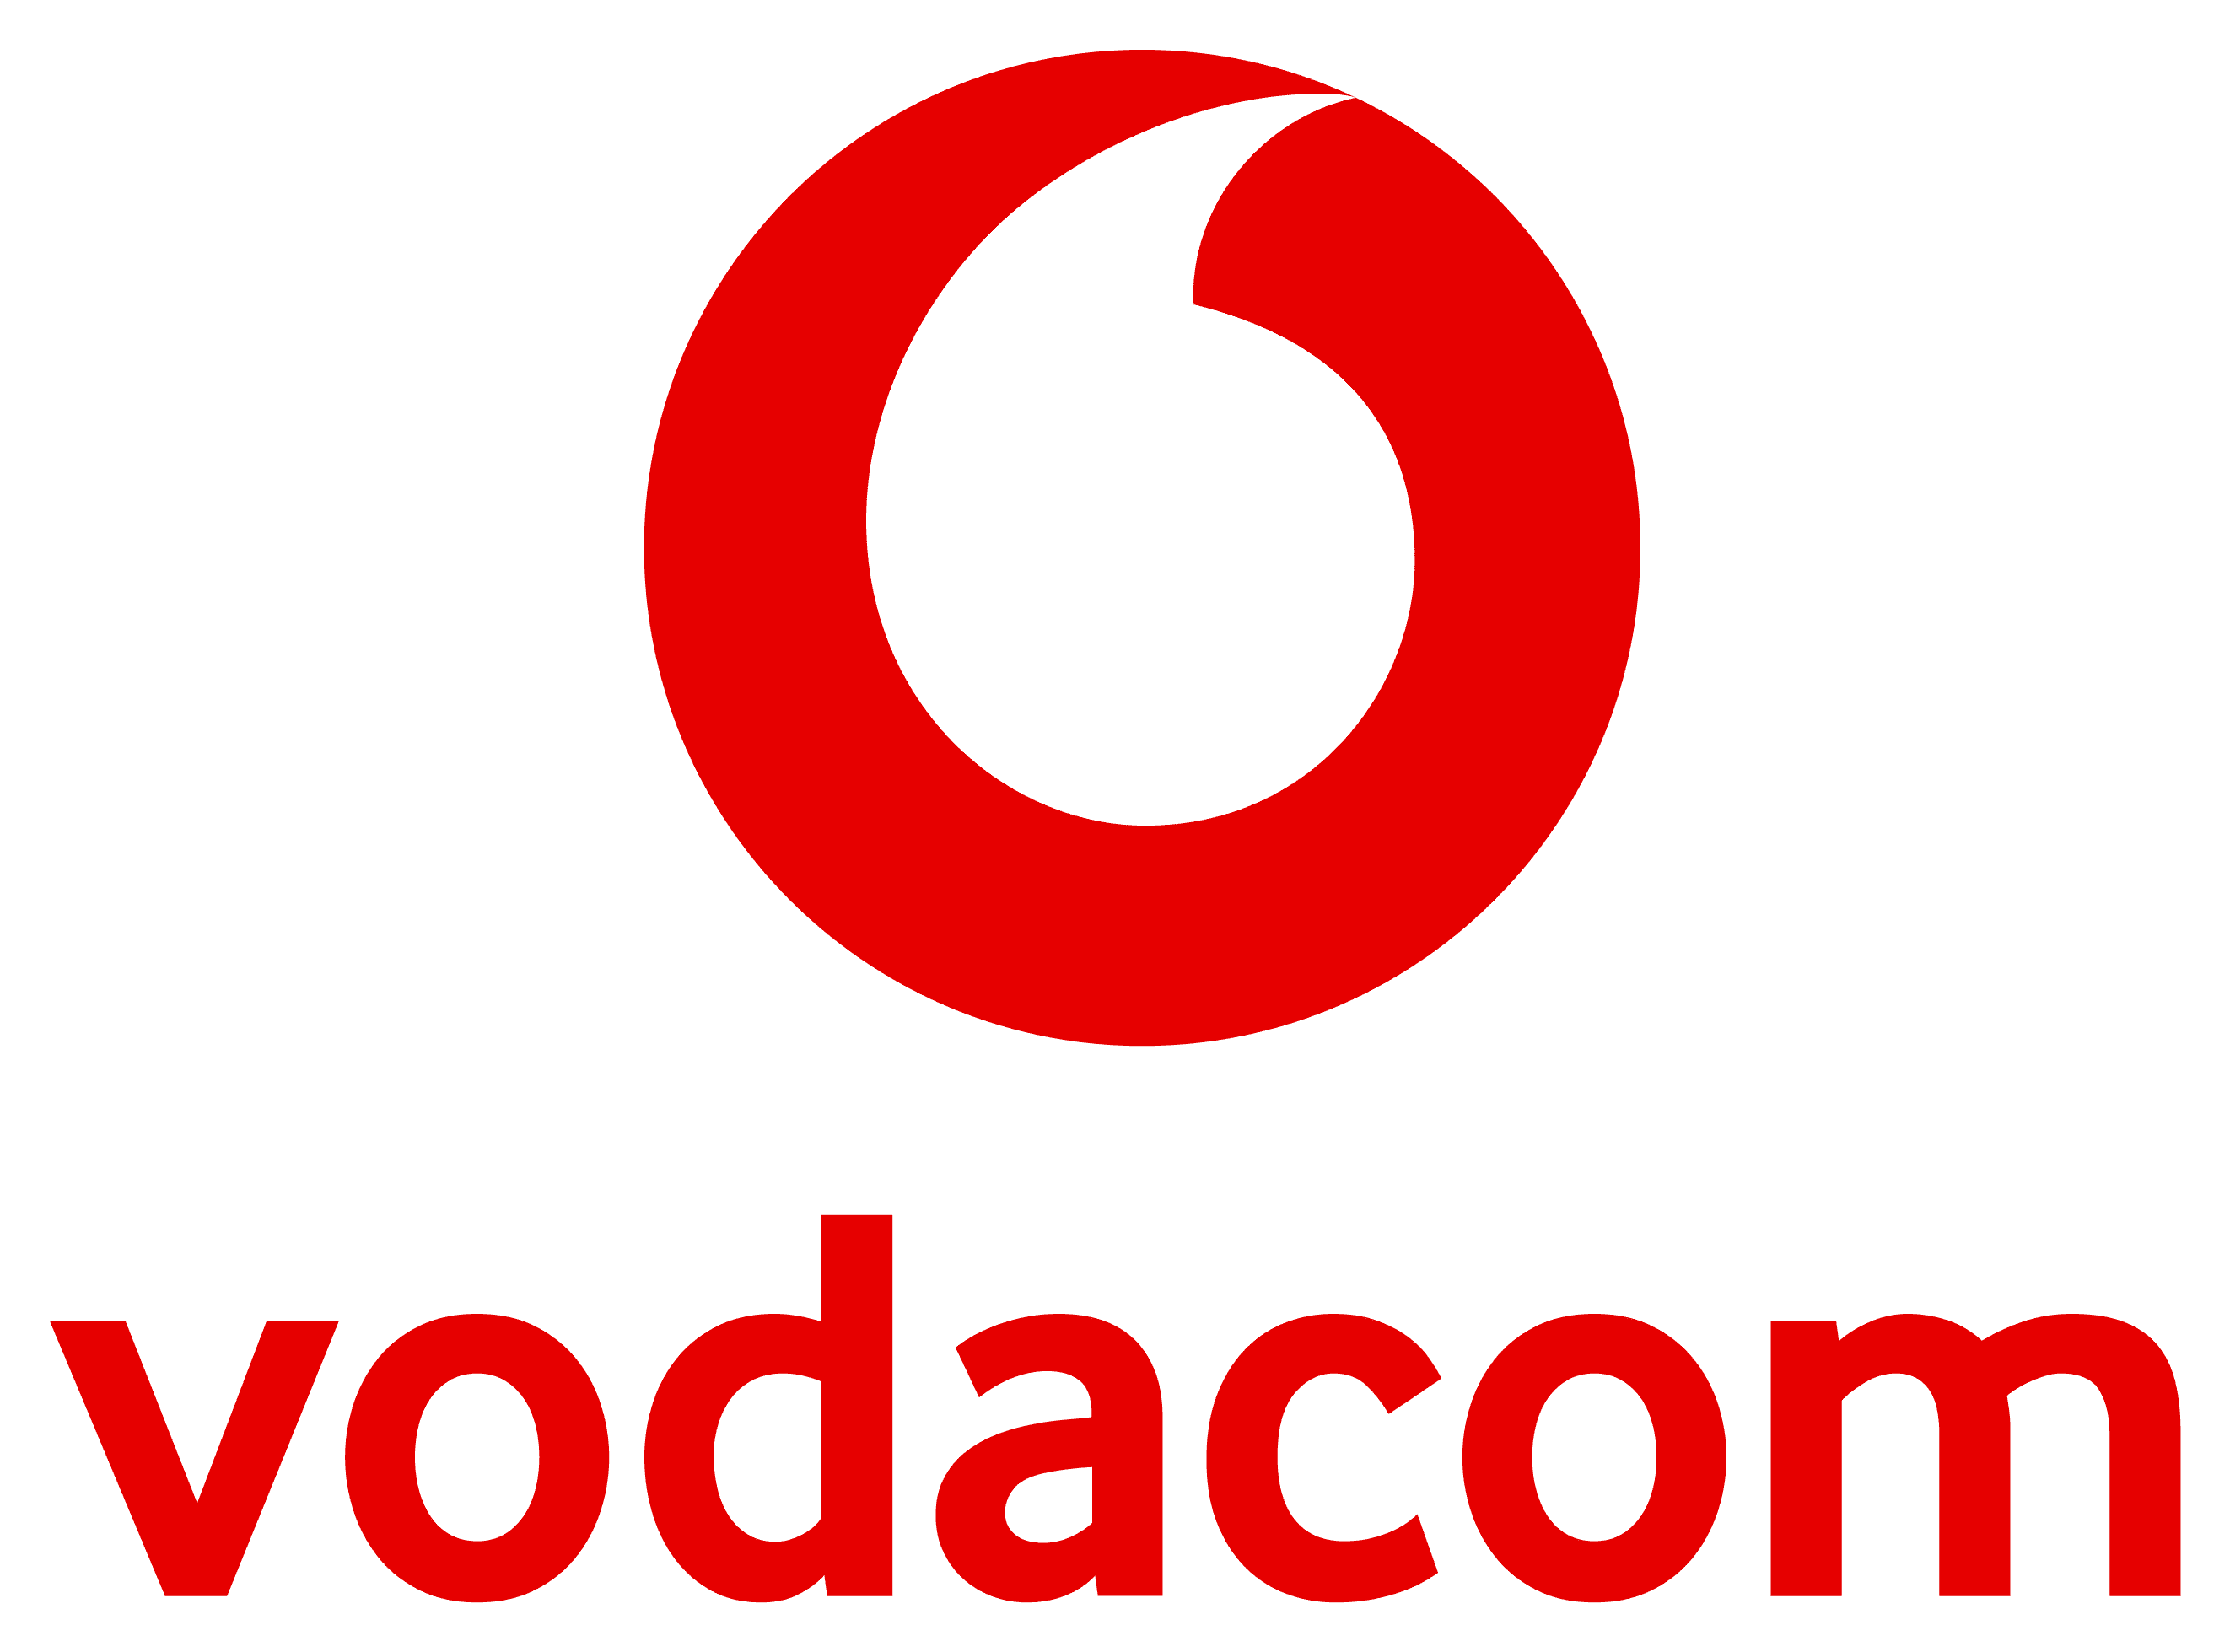 Vodacom fibre logo